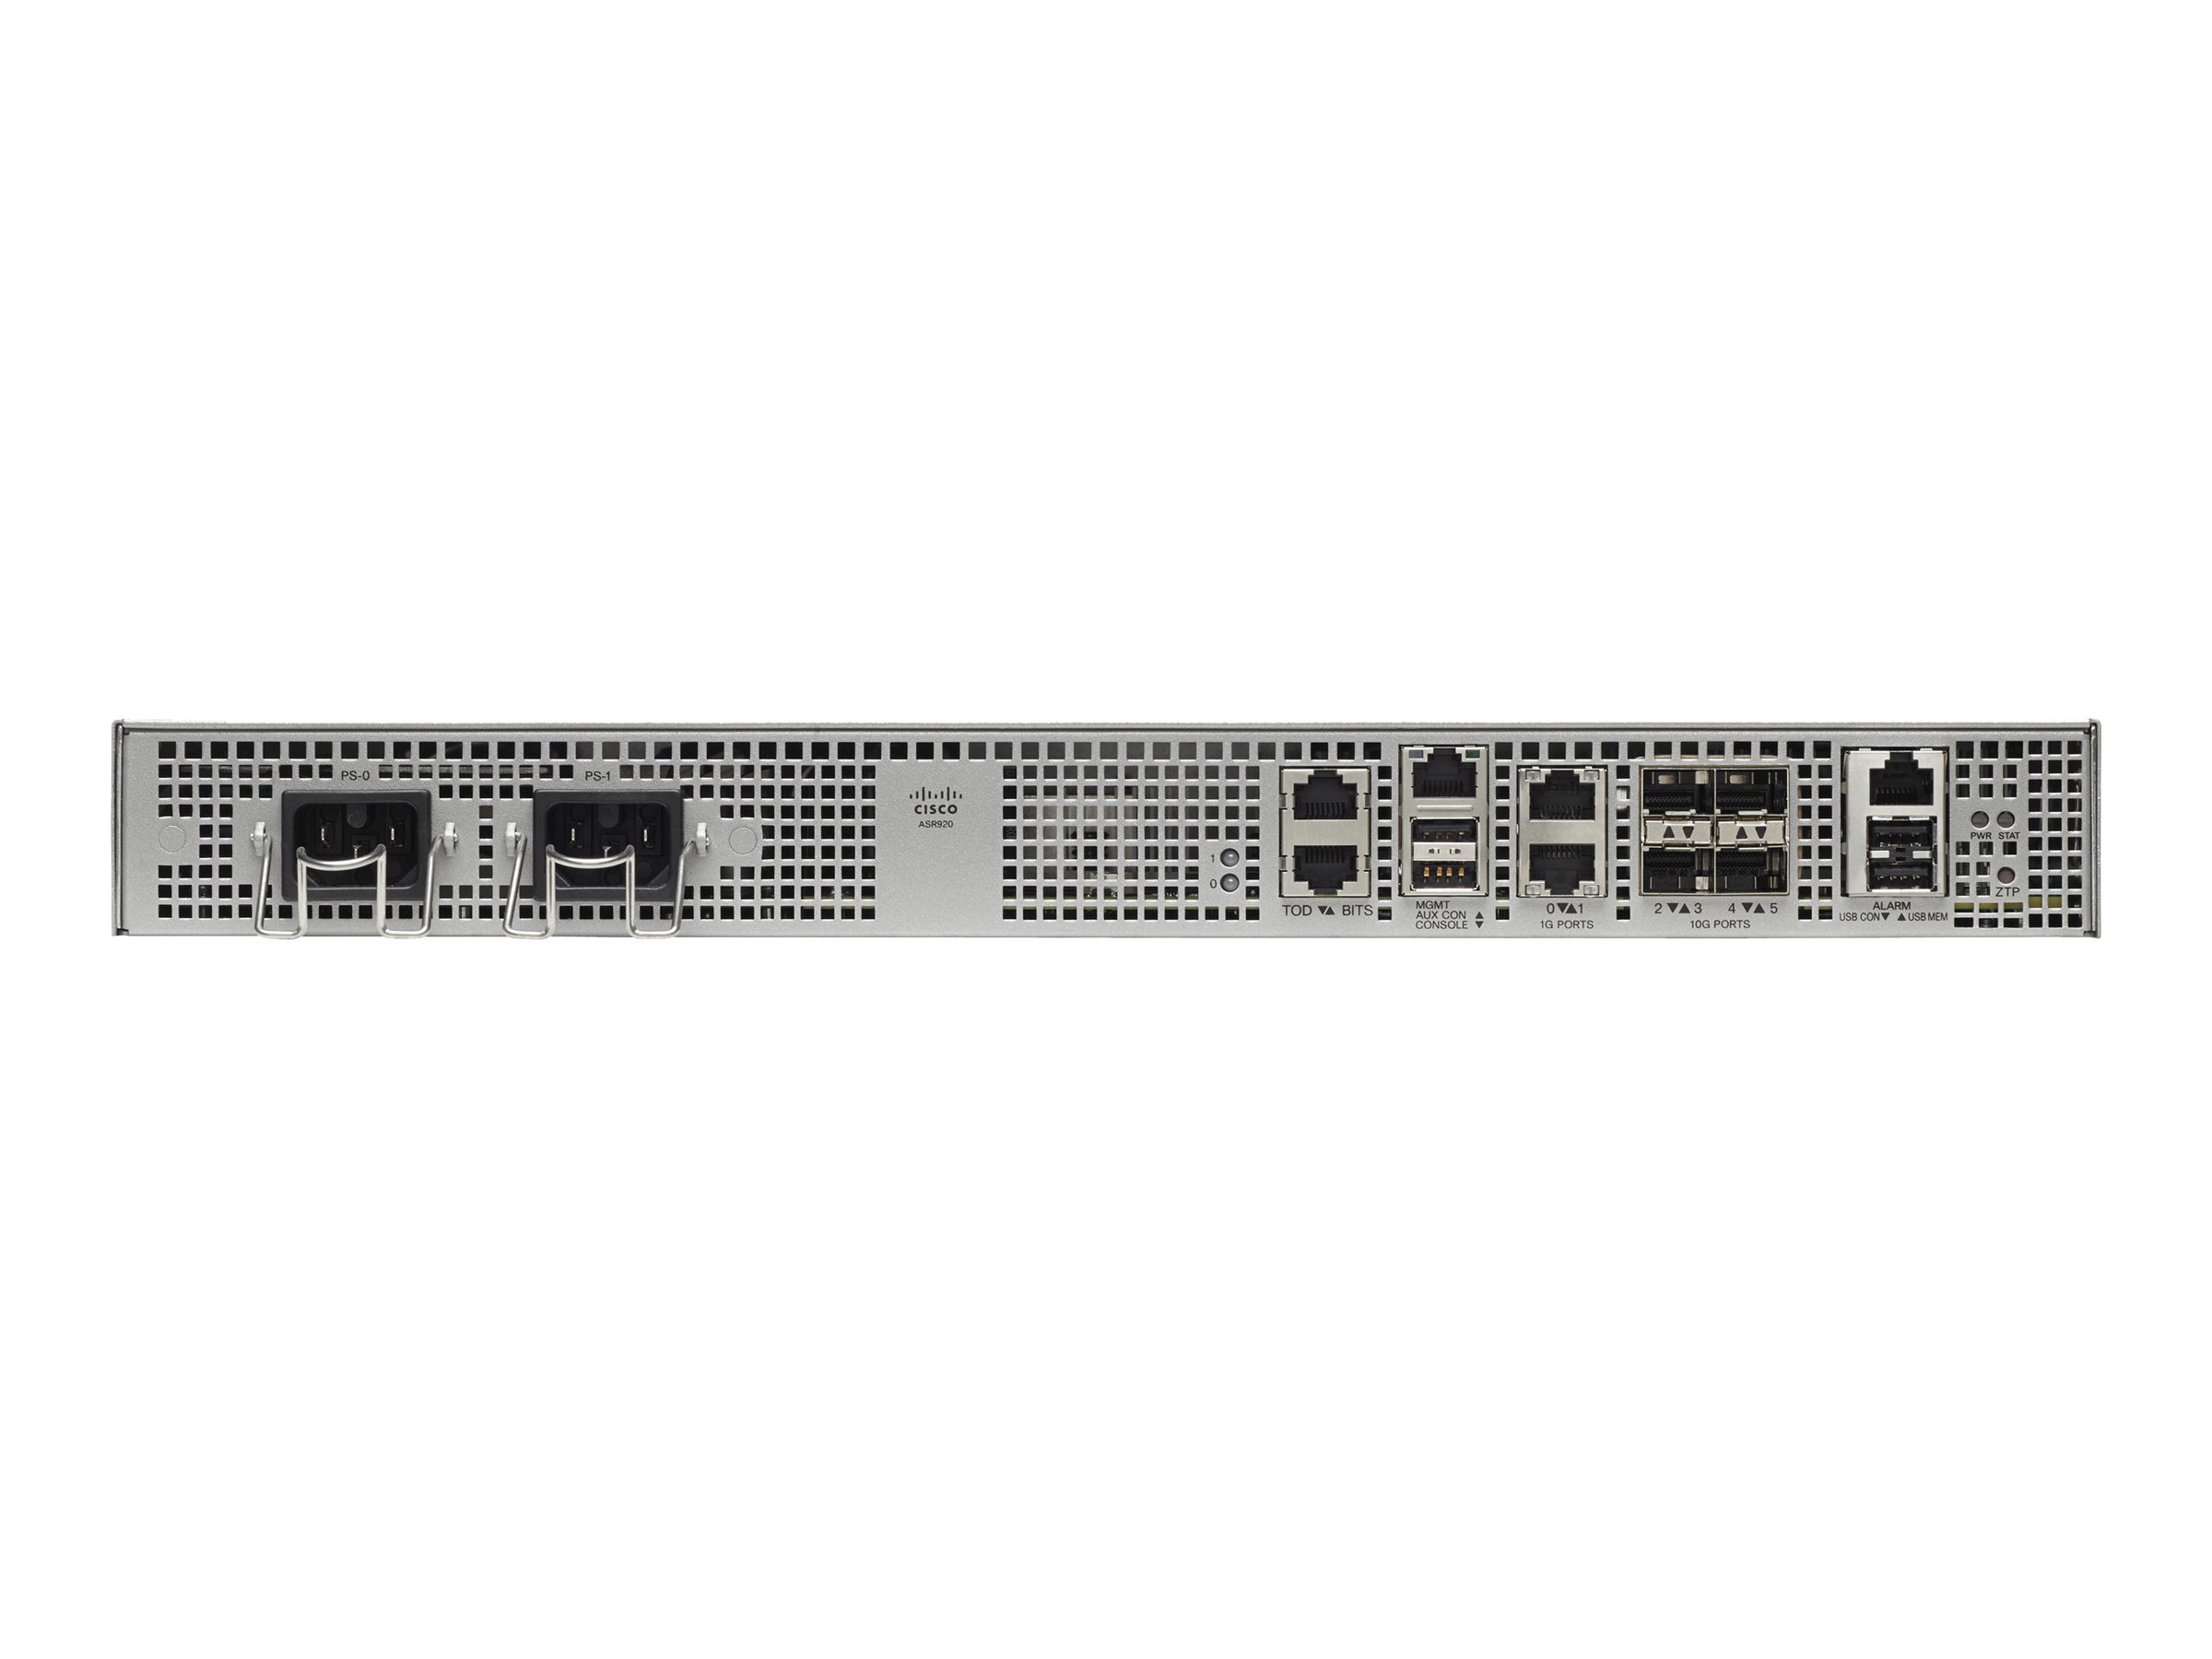 Cisco ASR 920 - Router - 10GbE - Luftstrom von vorne nach hinten - an Rack montierbar - wiederhergestellt